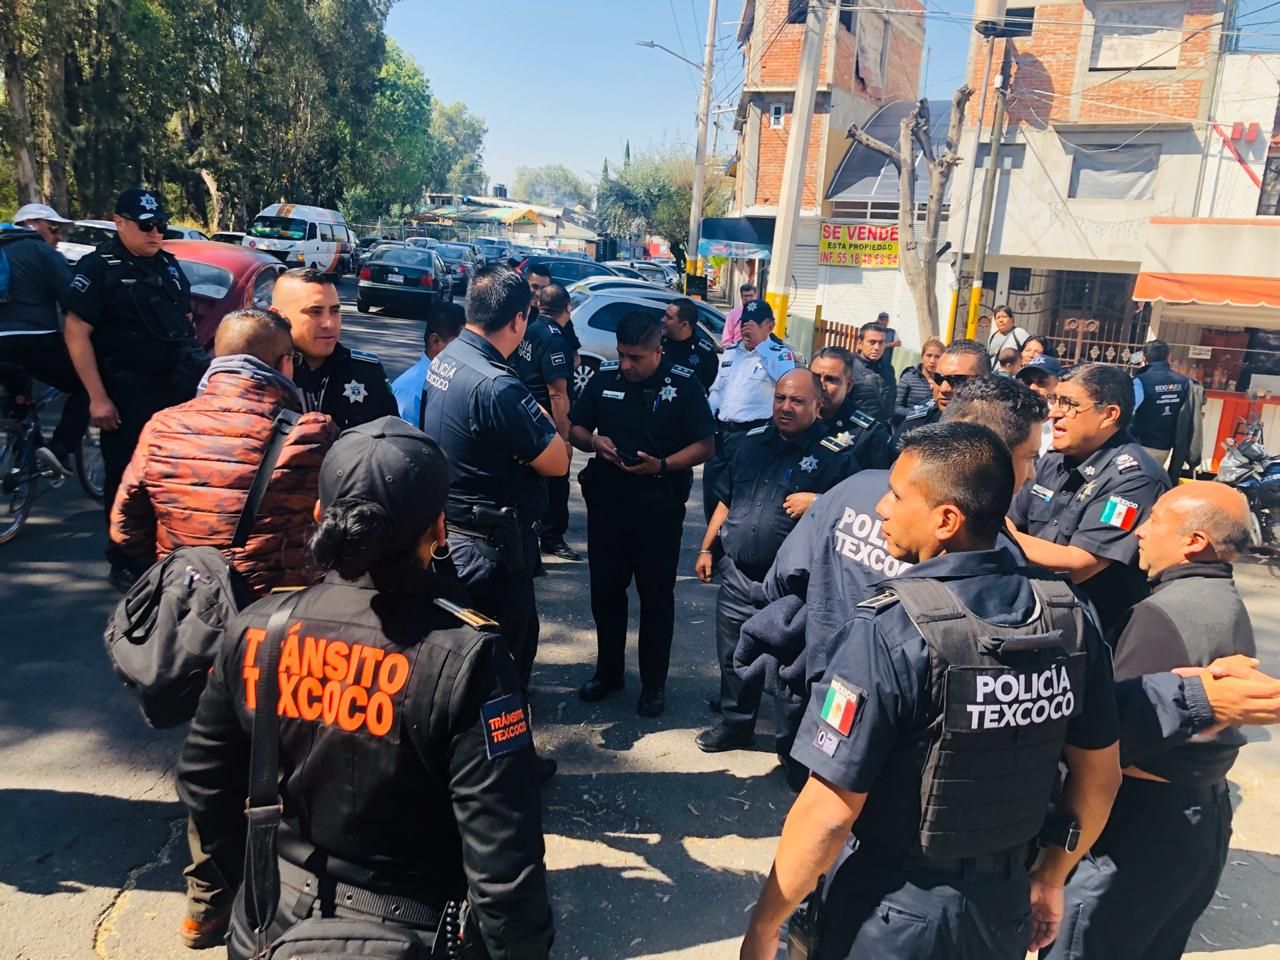 MP pone en libertad por falta de pruebas a policías de Texcoco acusados de robo